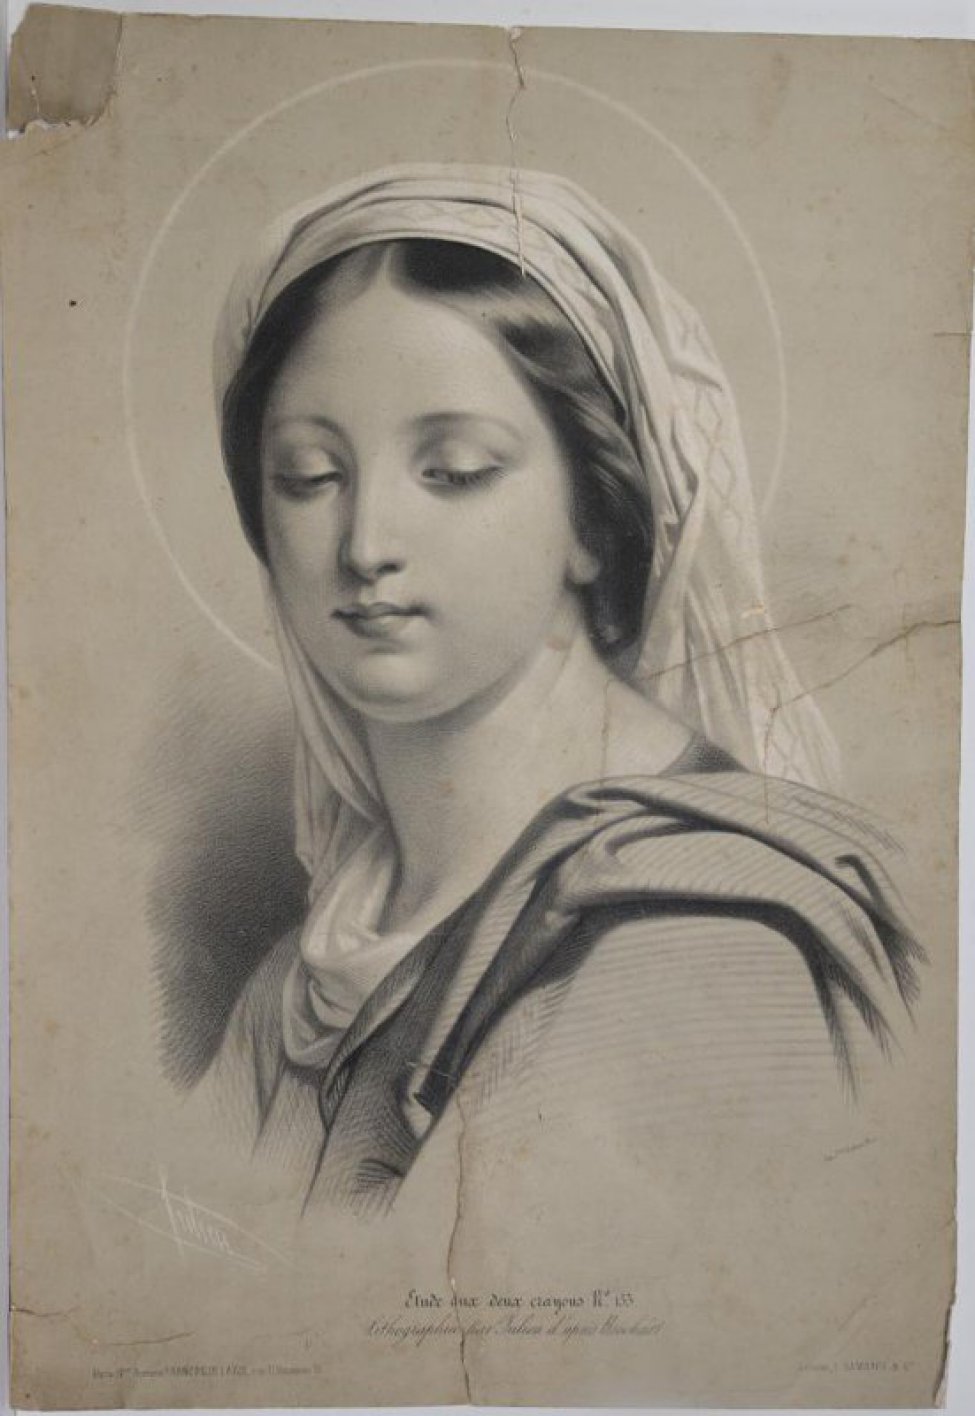 Изображена погрудно молодая женщина 3/4, голова повернута к левому плечу, взгляд опущен. На плечах драпировки, на голове драпированный светлый платок. За головой - нимб.